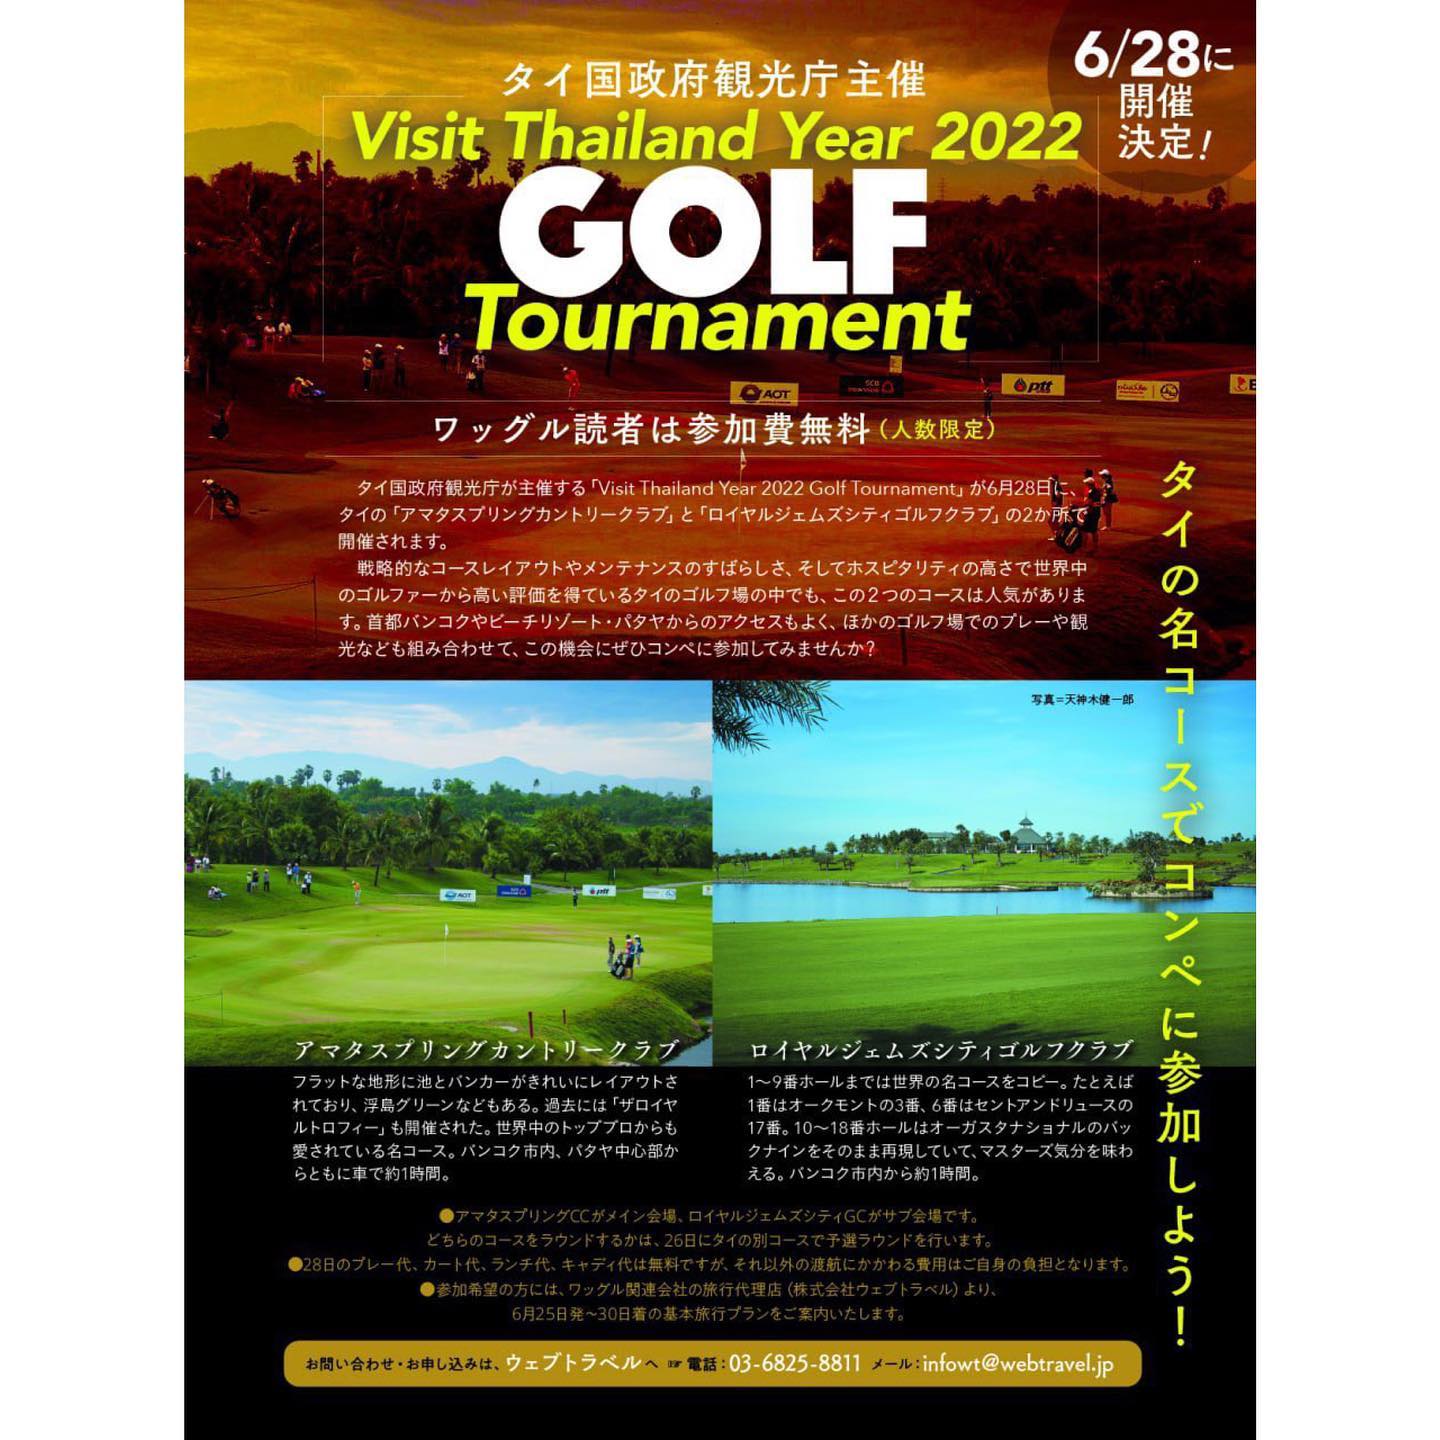 ．
2022年6月28日に、タイ国政府観光庁主催の「Visit Thailand Year 2022 GOLF Tournament」の開催が決定🎊✨

参加希望者には6/25~6/30までの基本ツアーをご案内します🌟
お問い合わせ、お申し込みはウェブトラベルまで💁‍♂️

☎️03-6825-8811
✉️infowt@webtravel.jp